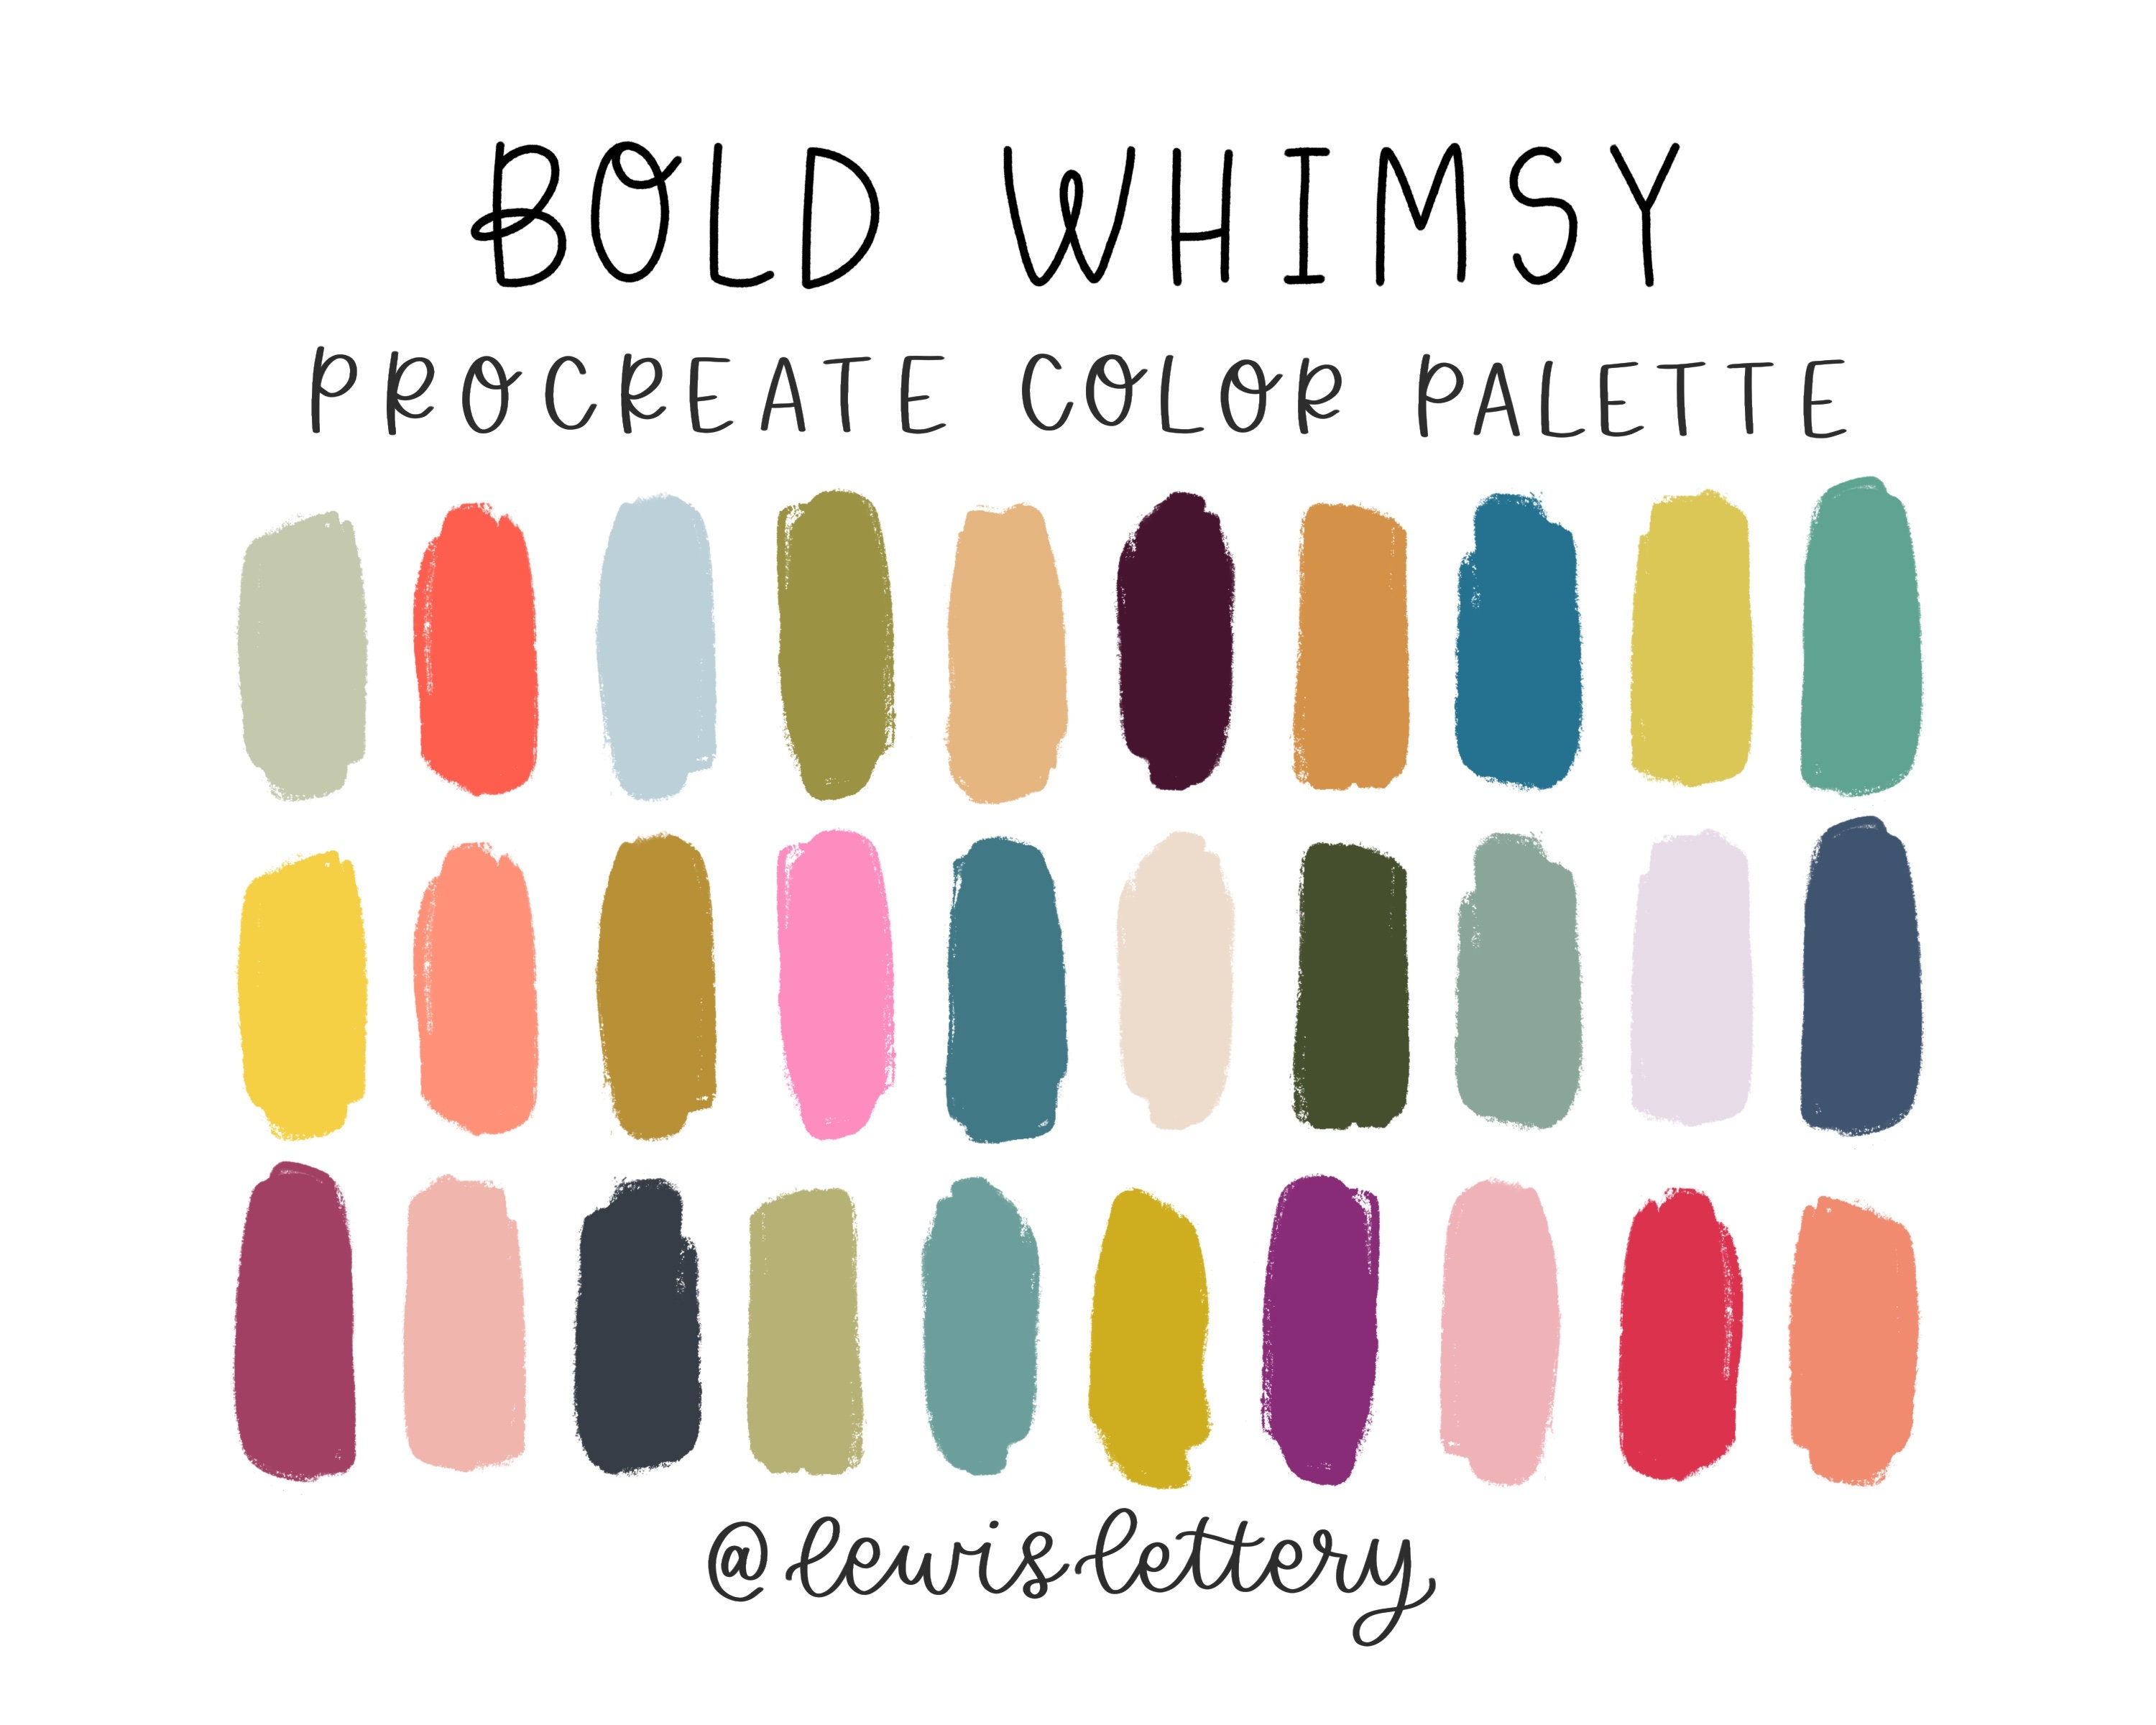 A Collection of Pretty Procreate Colour Palettes - Design Cuts